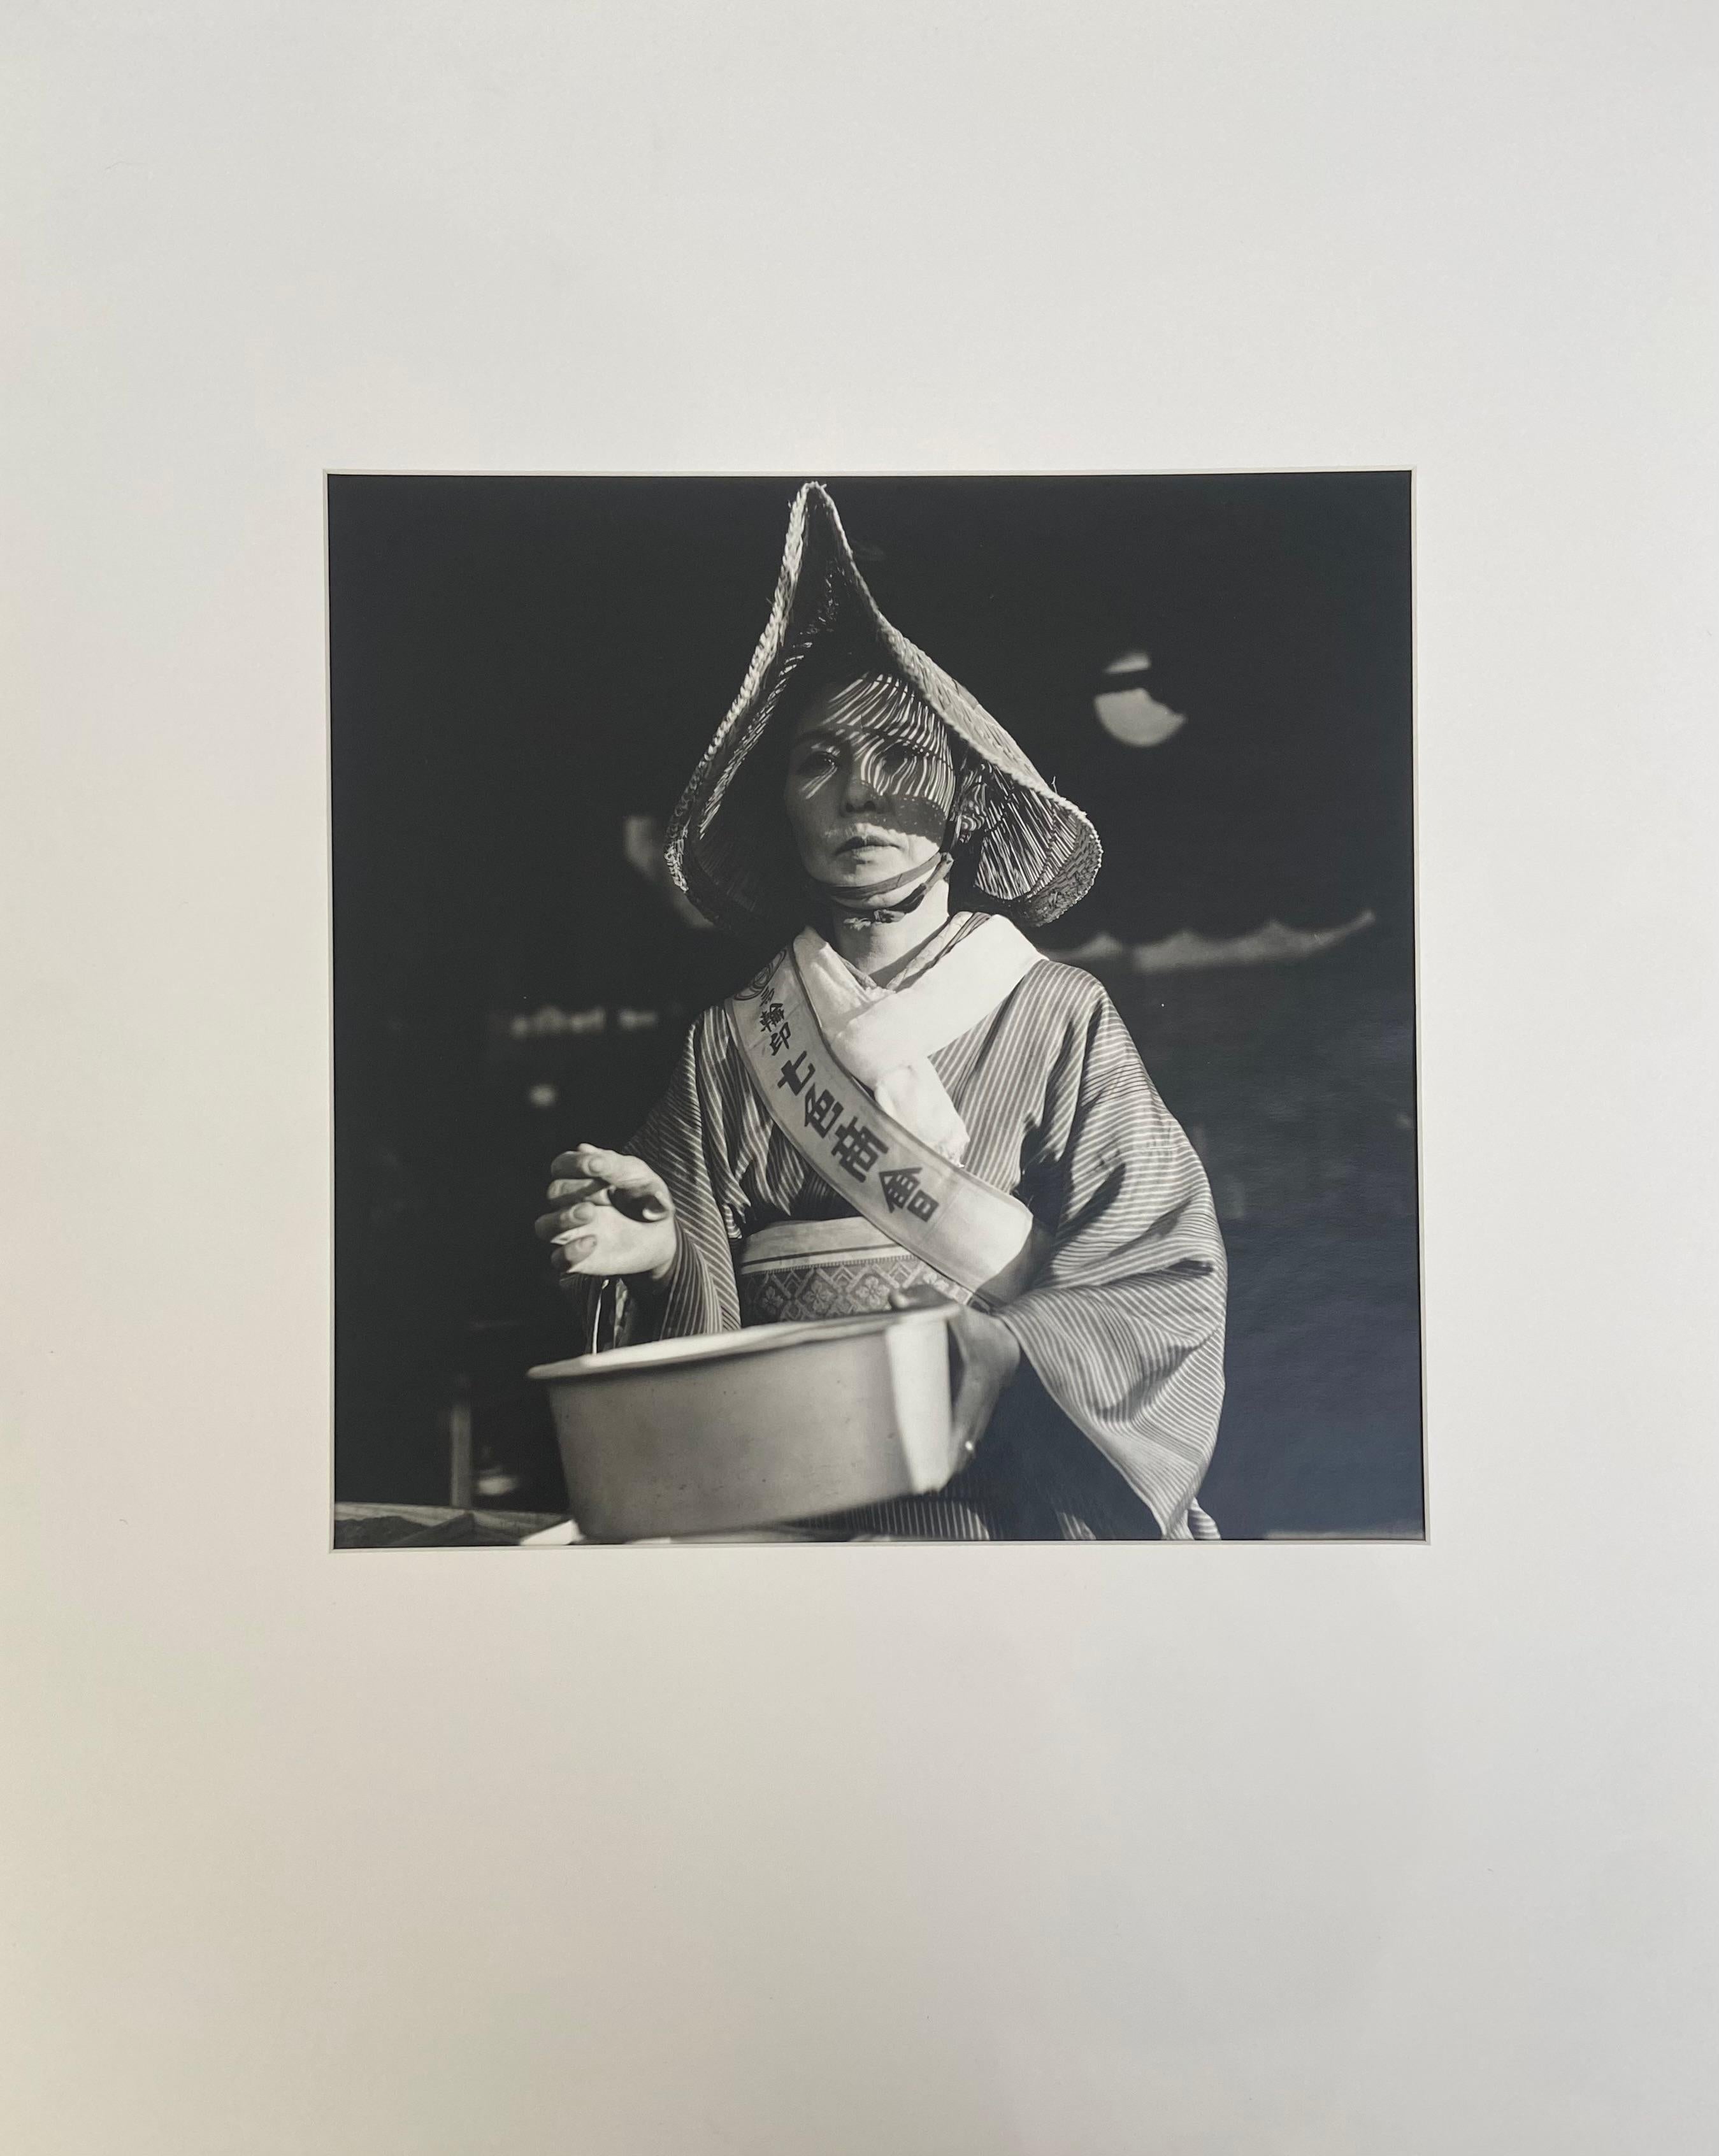 Horace Bristol Portrait Photograph - Woman Vendor